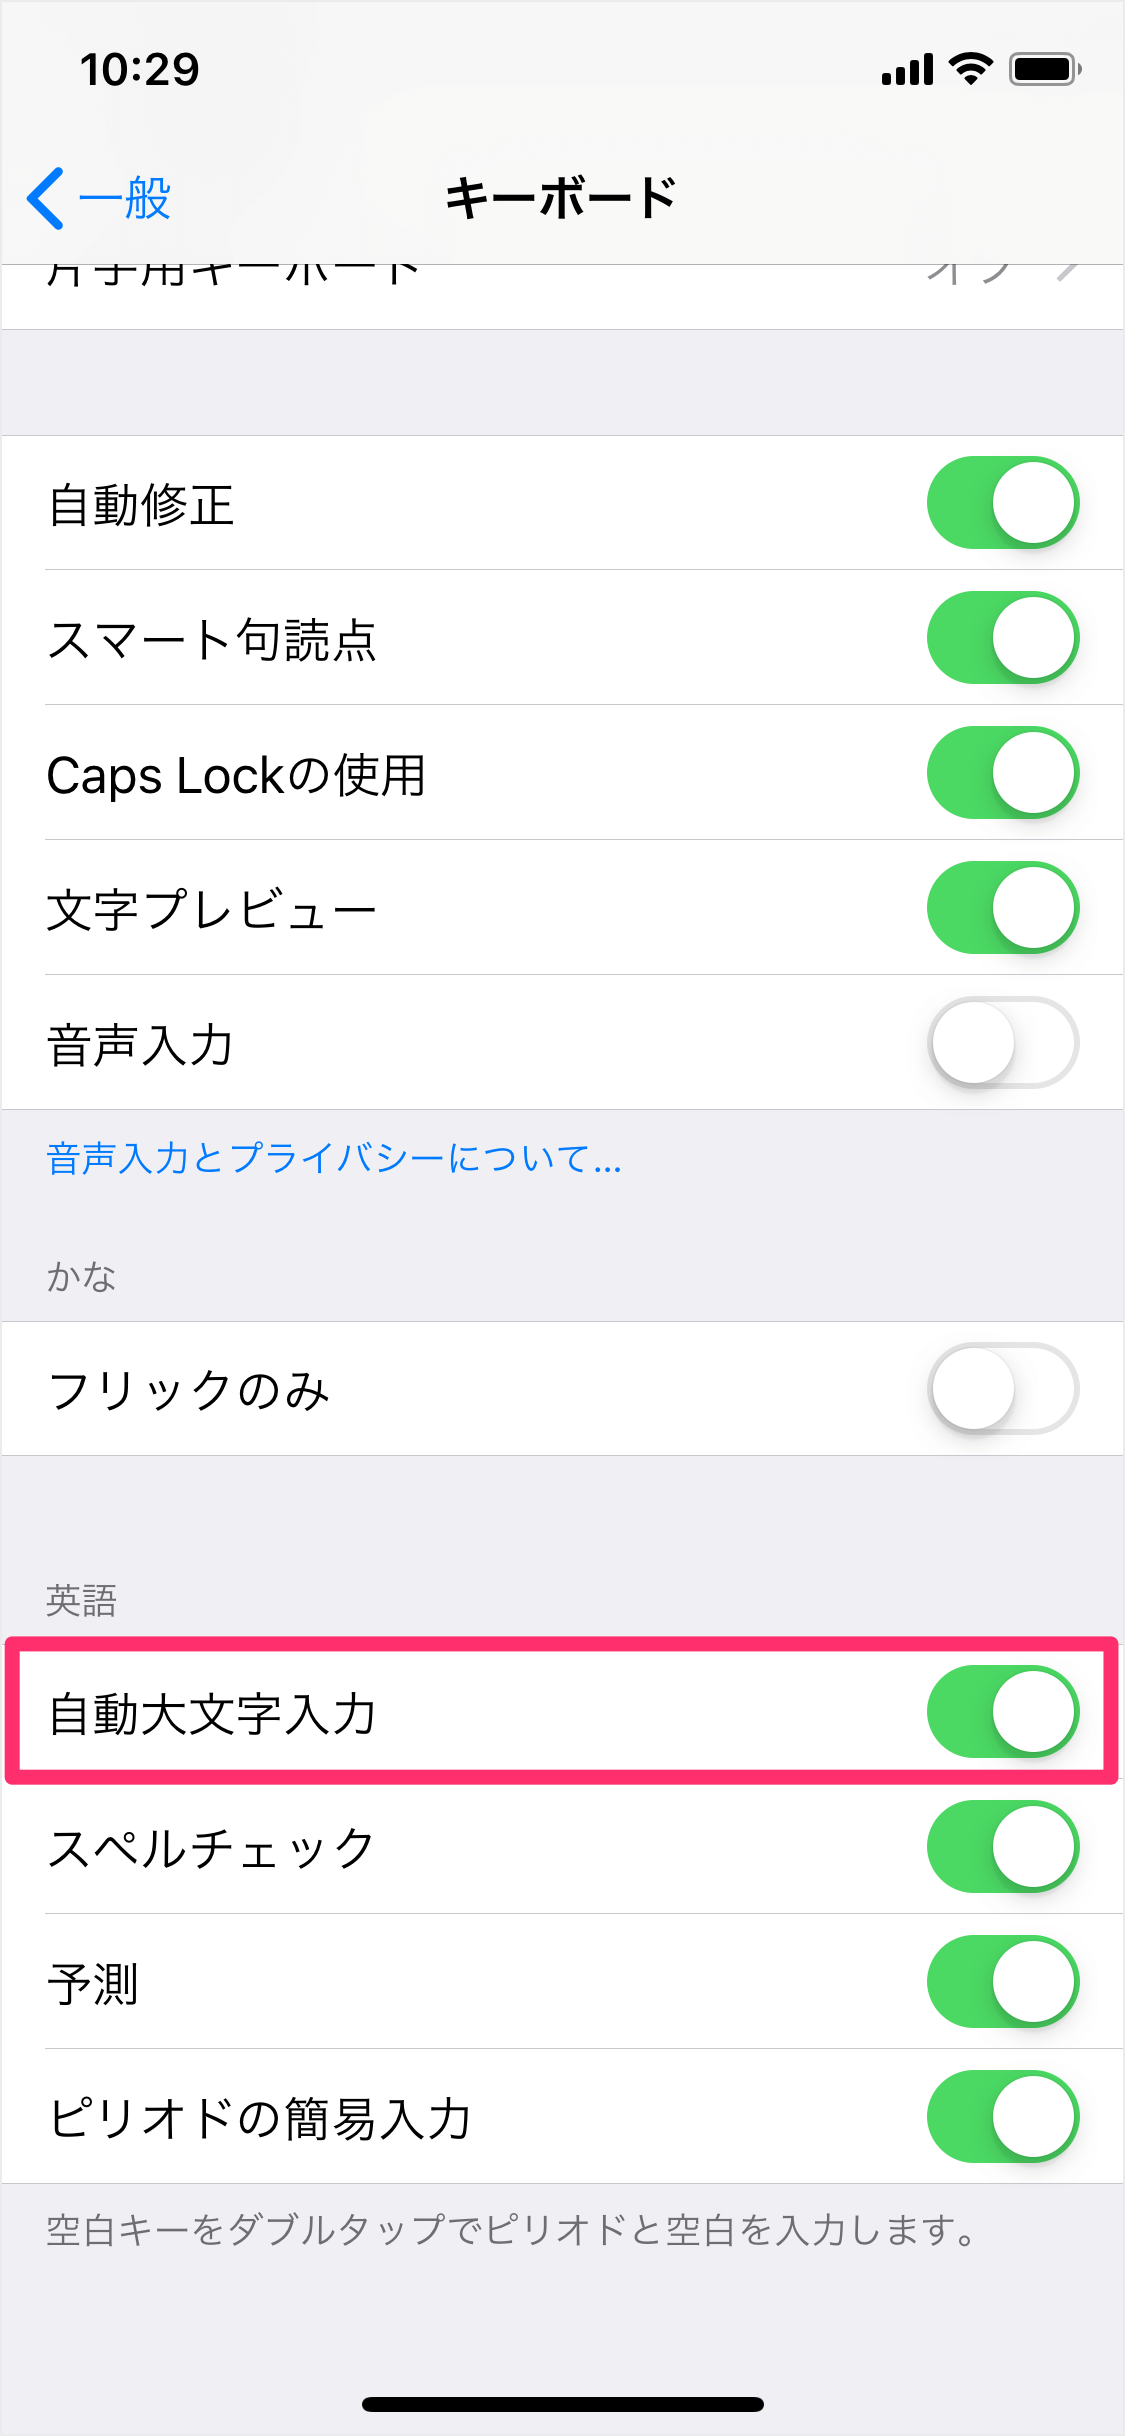 Iphone Ipad 頭文字を大文字にしたくない 自動大文字入力 Pc設定のカルマ